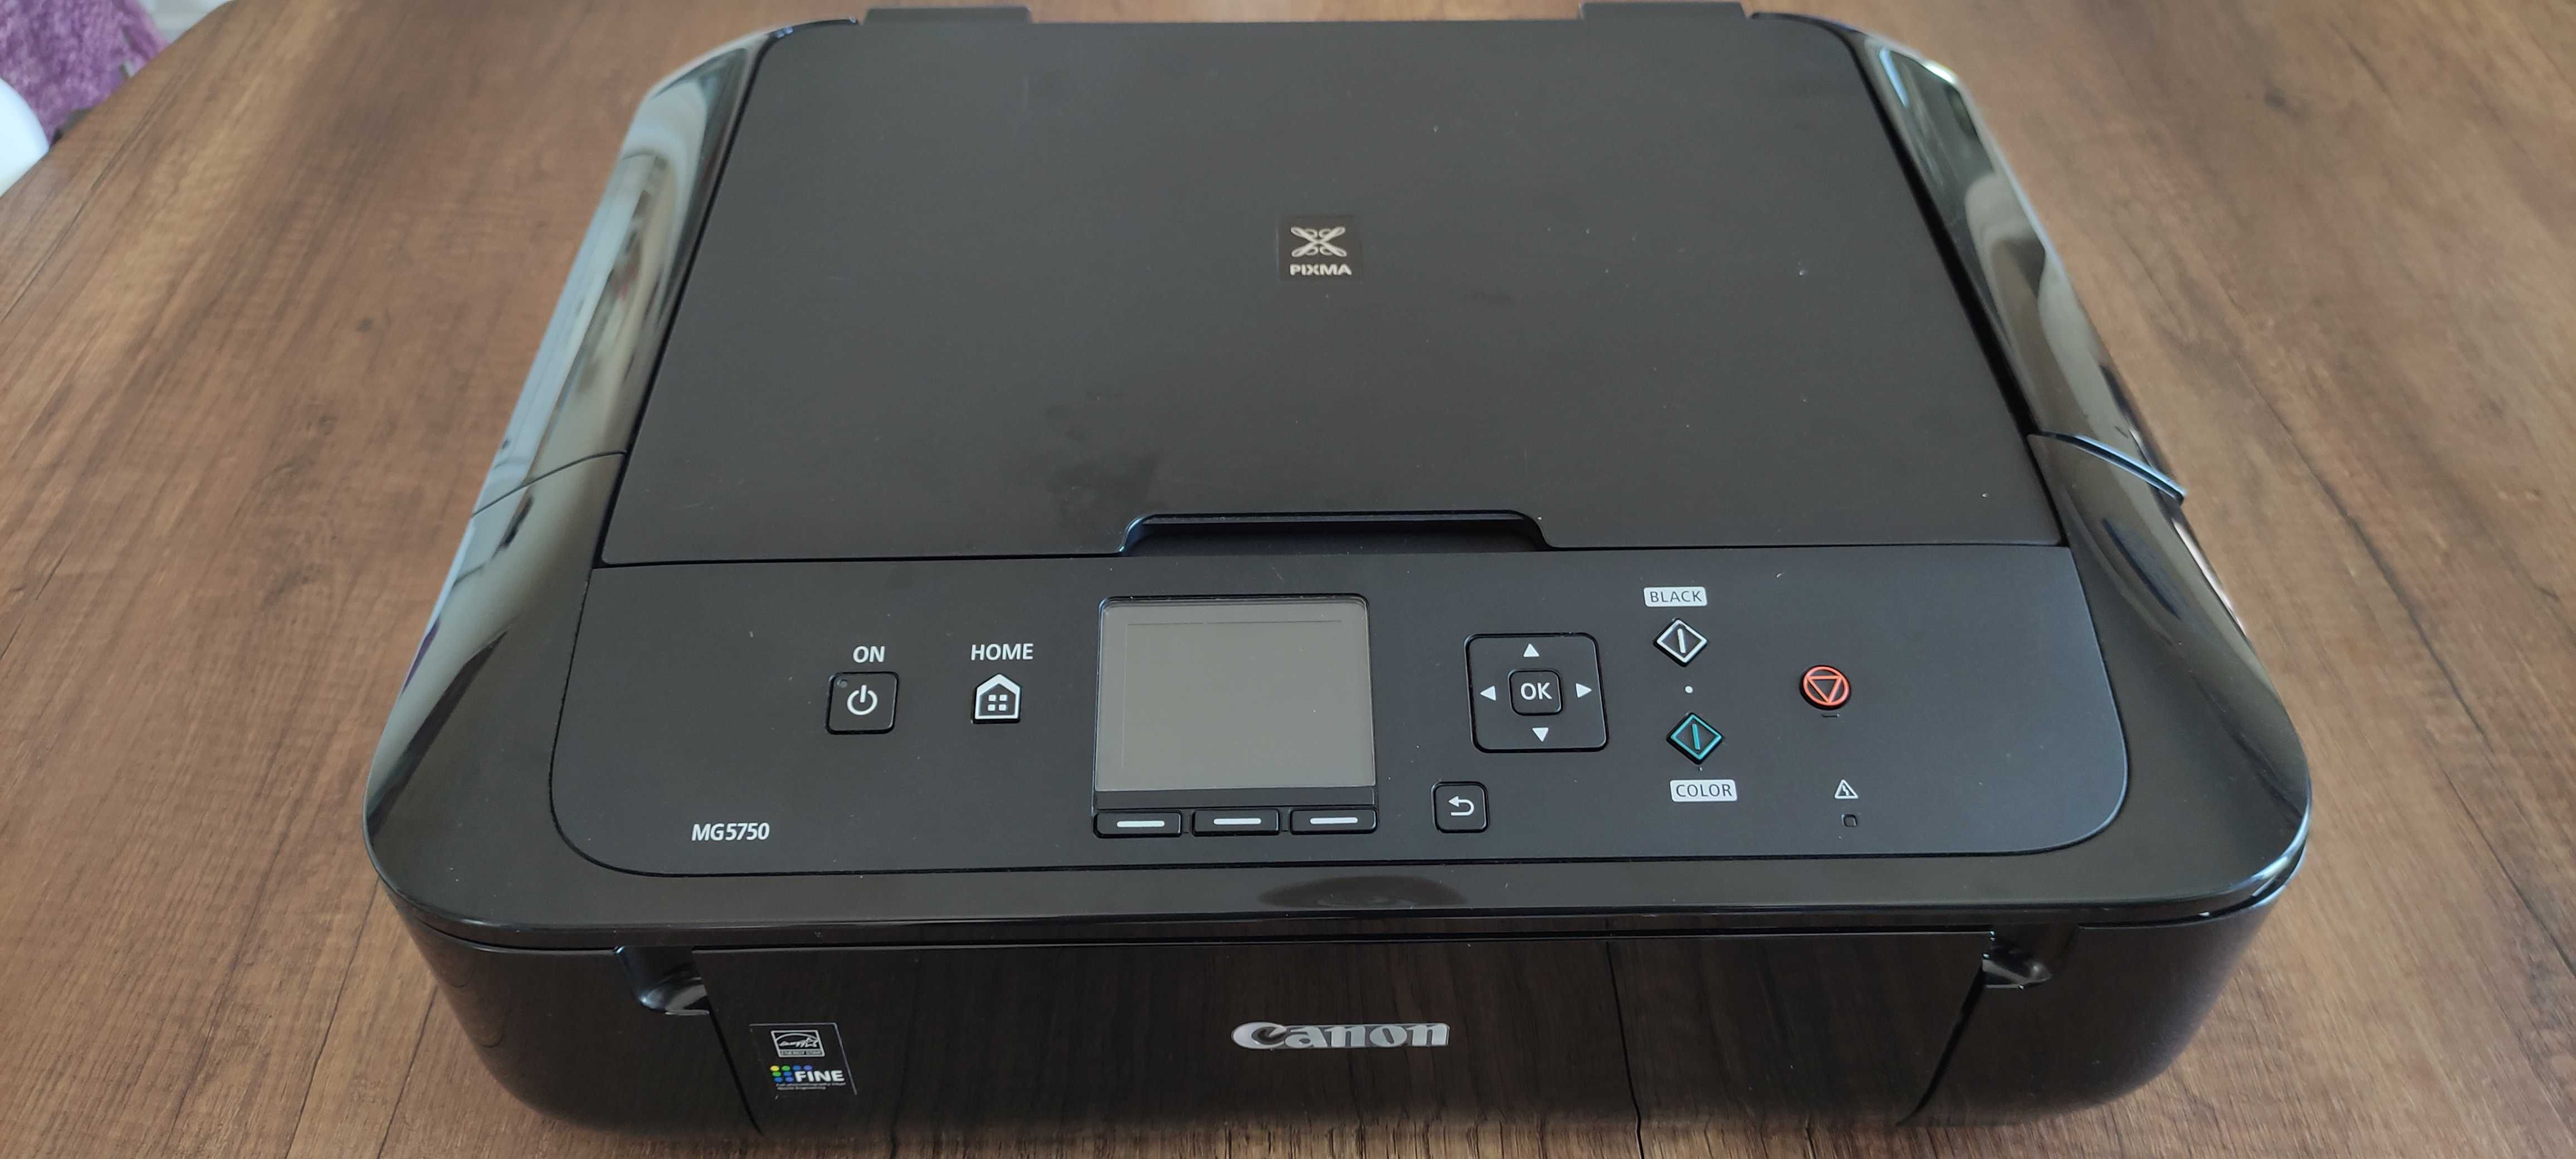 Принтер Canon MG5750-pixma